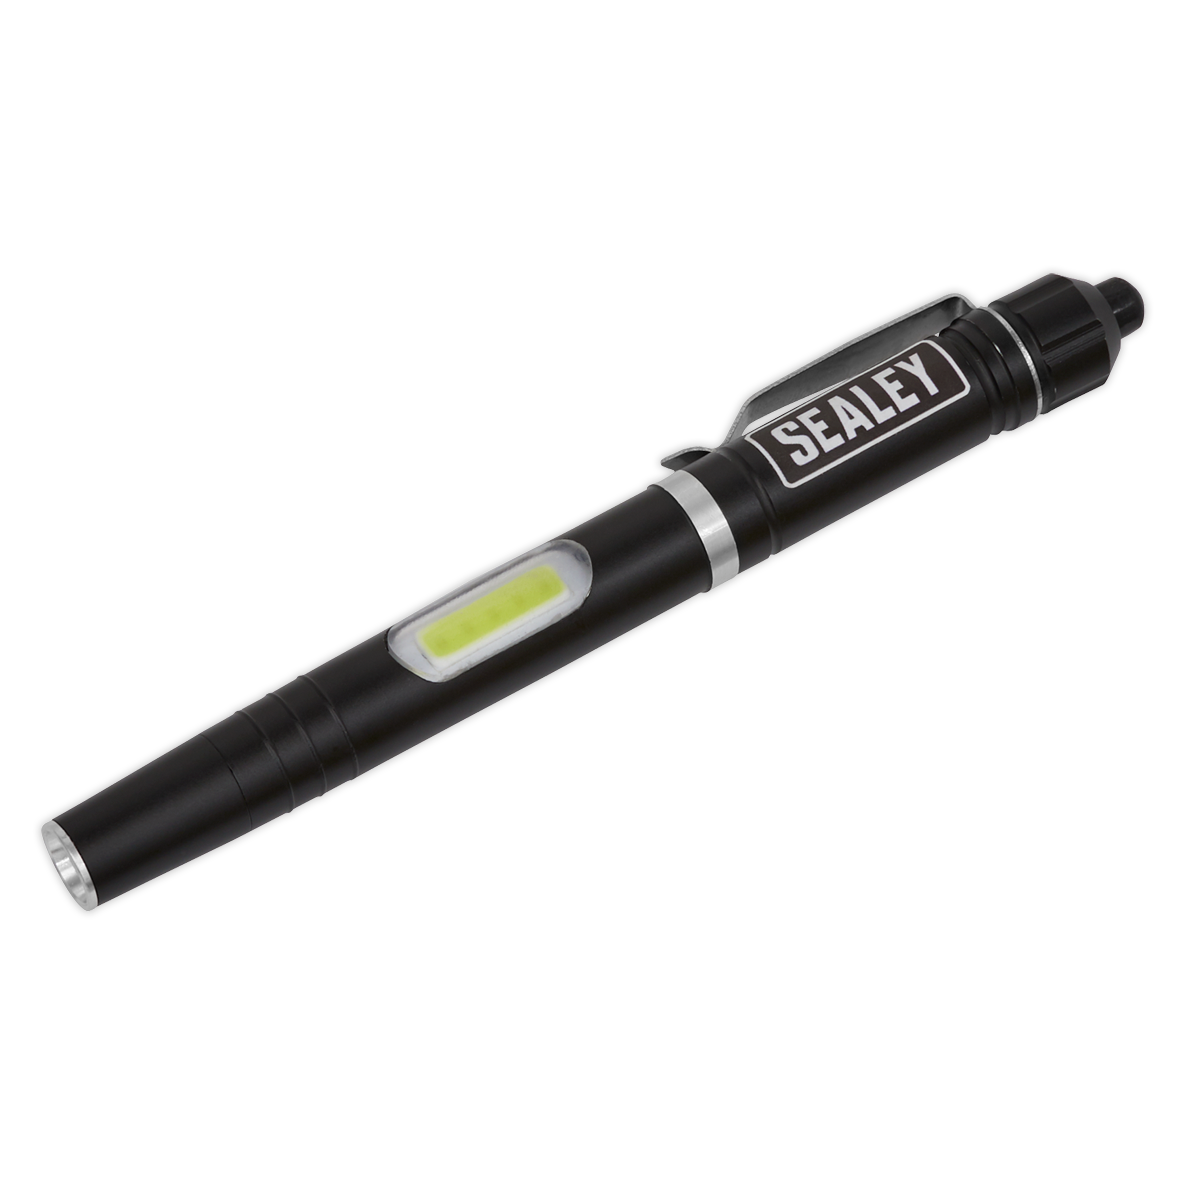 Sealey Aluminium Penlight 3W SMD & 1W COB LED